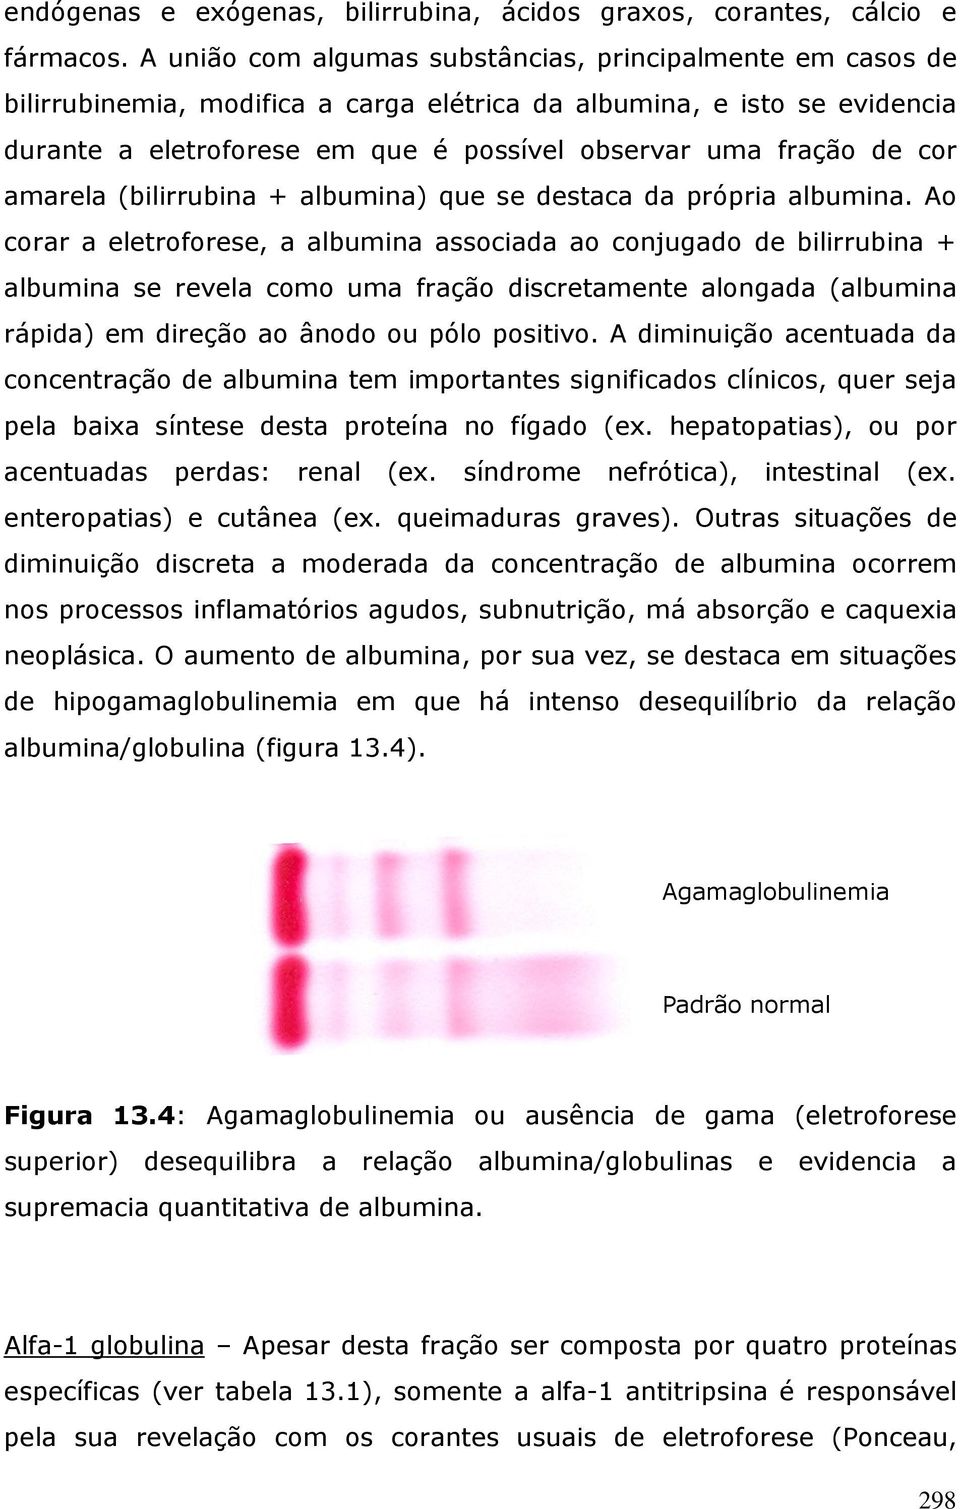 cor amarela (bilirrubina + albumina) que se destaca da própria albumina.